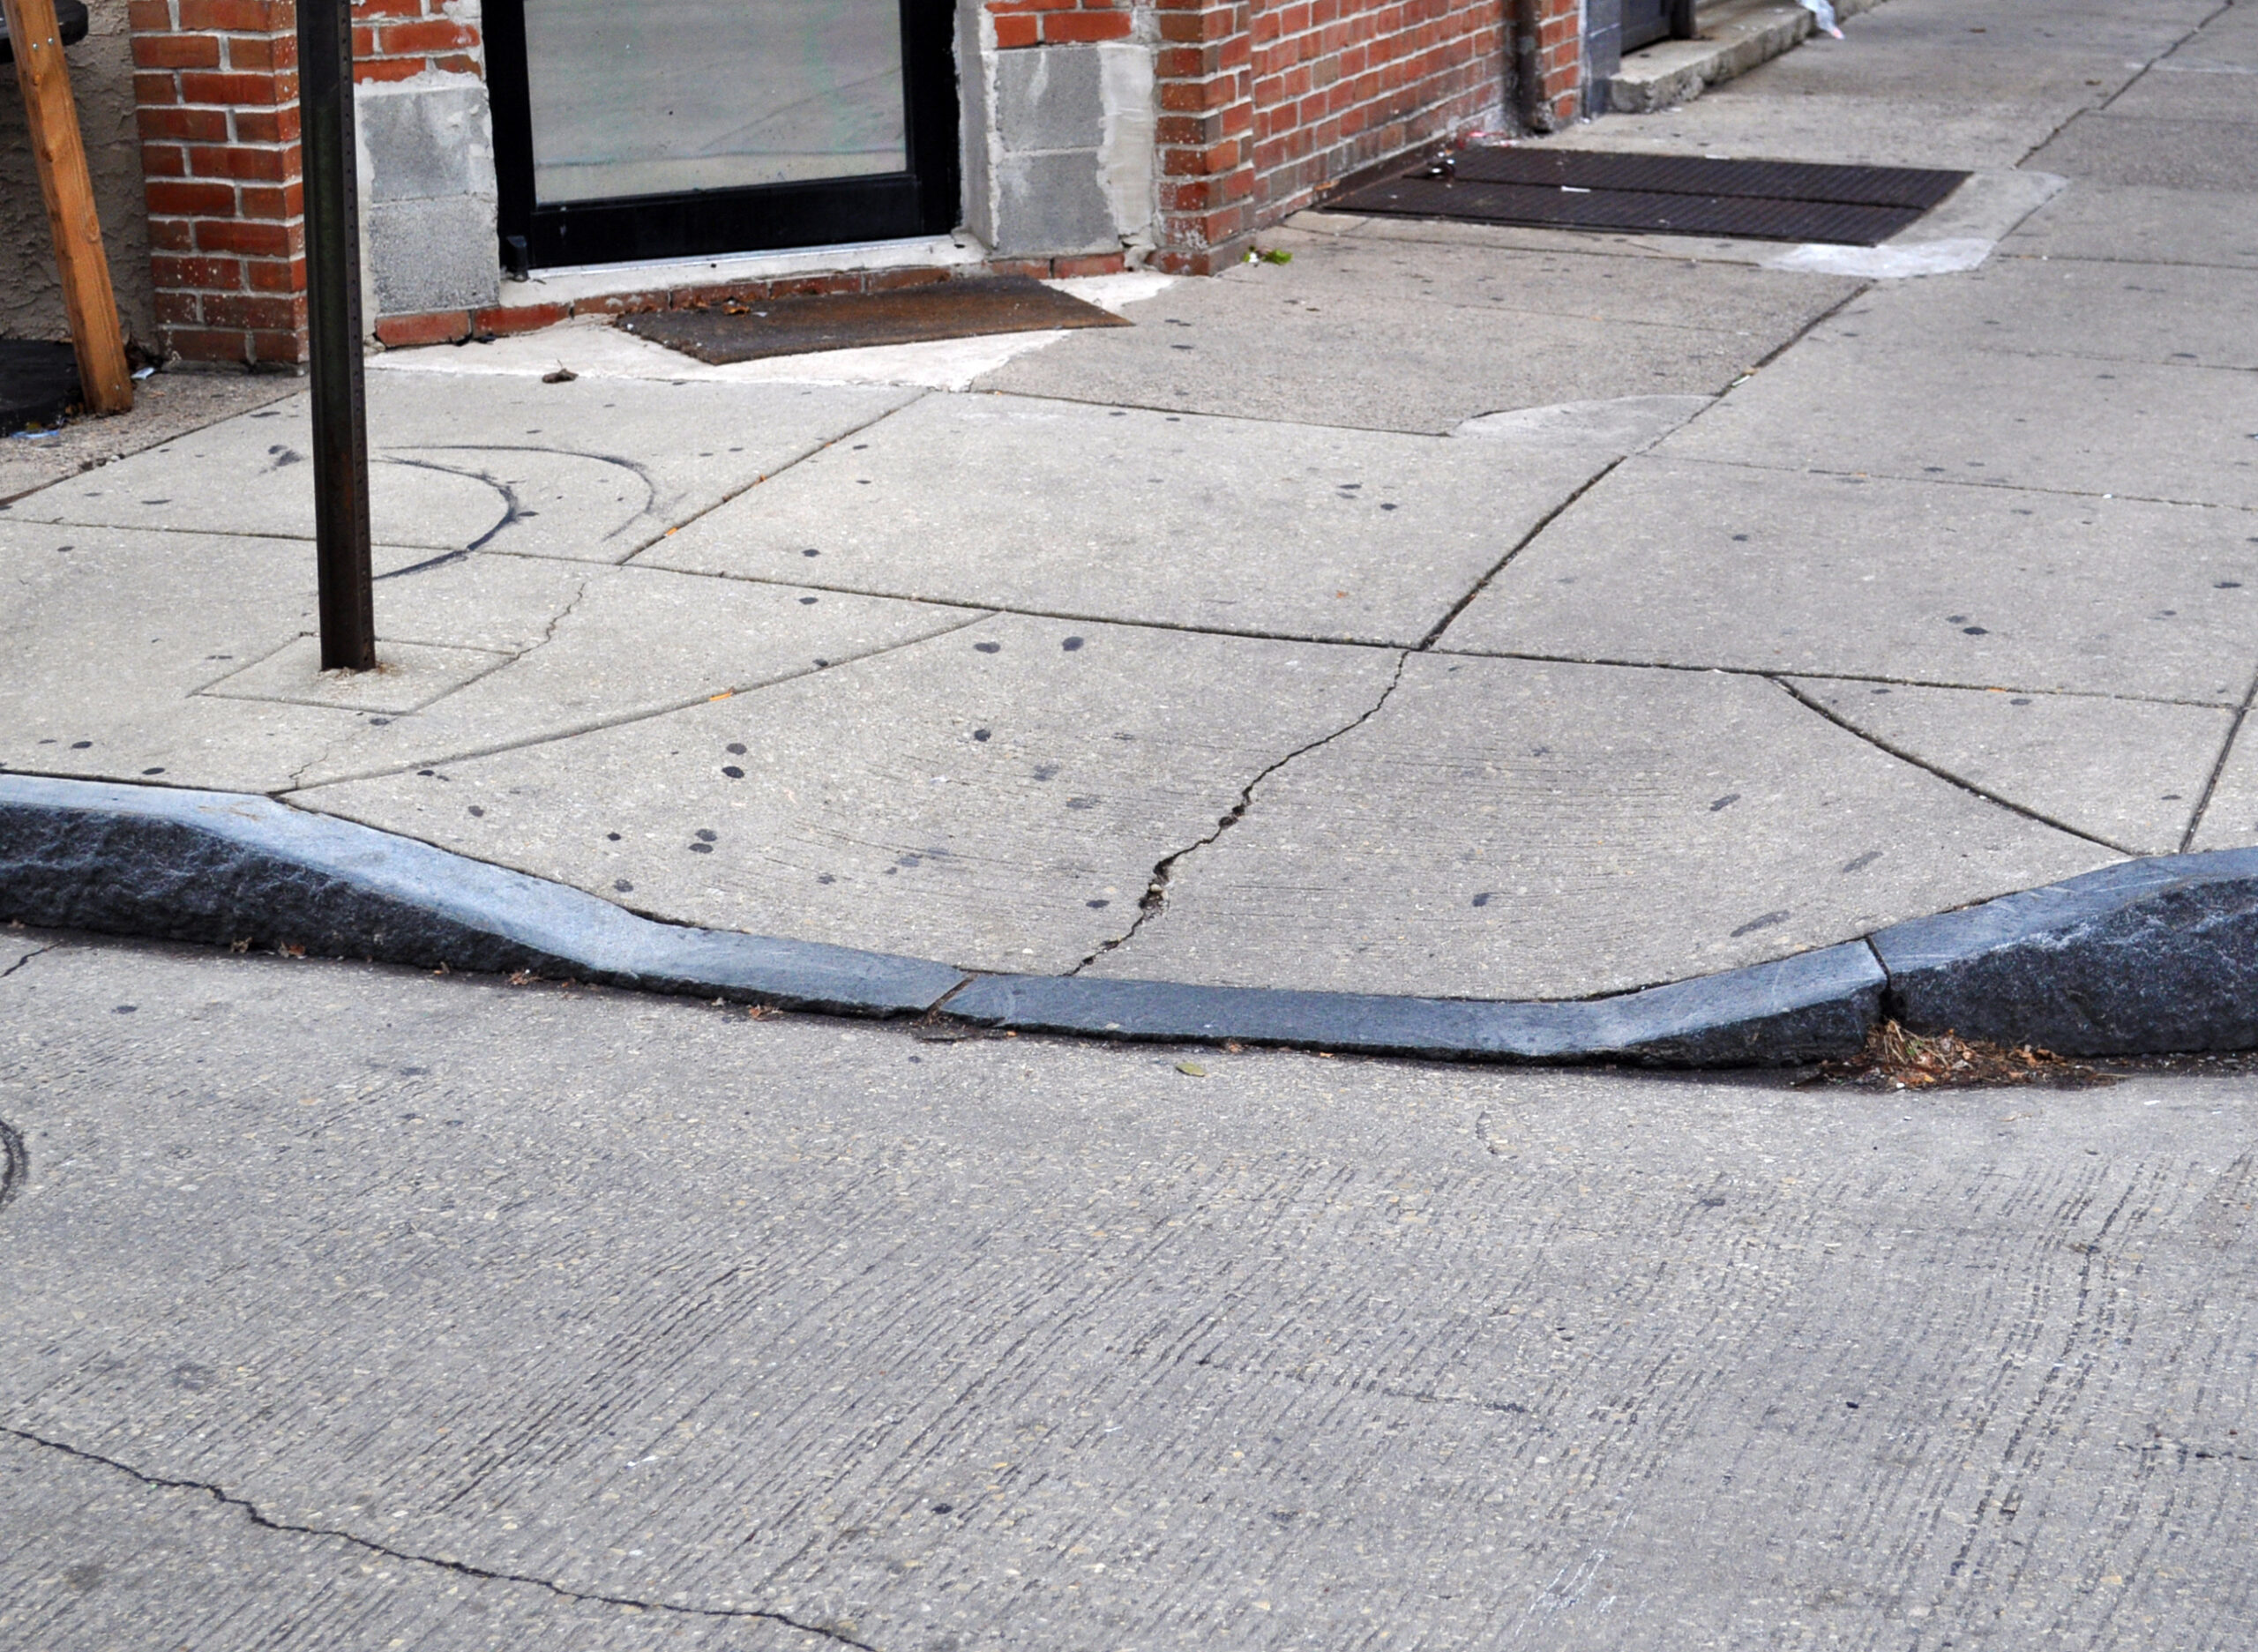 curb cut into the sidewalk